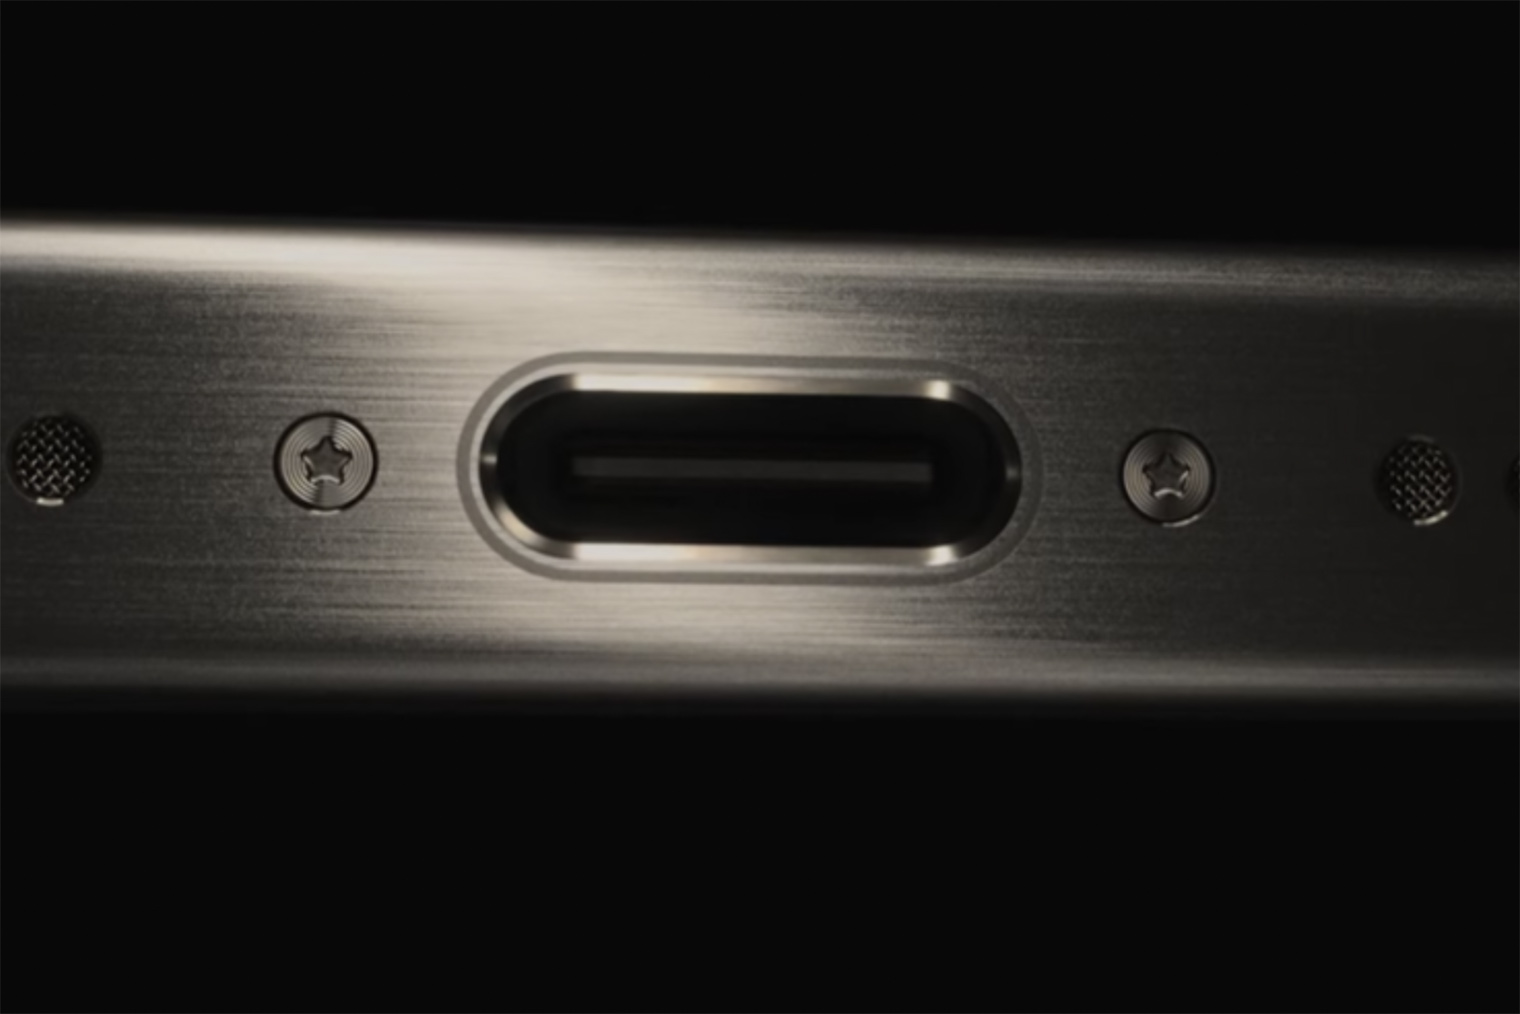 Портативное зарядное USB устройство для телефона своими руками — Video | VK